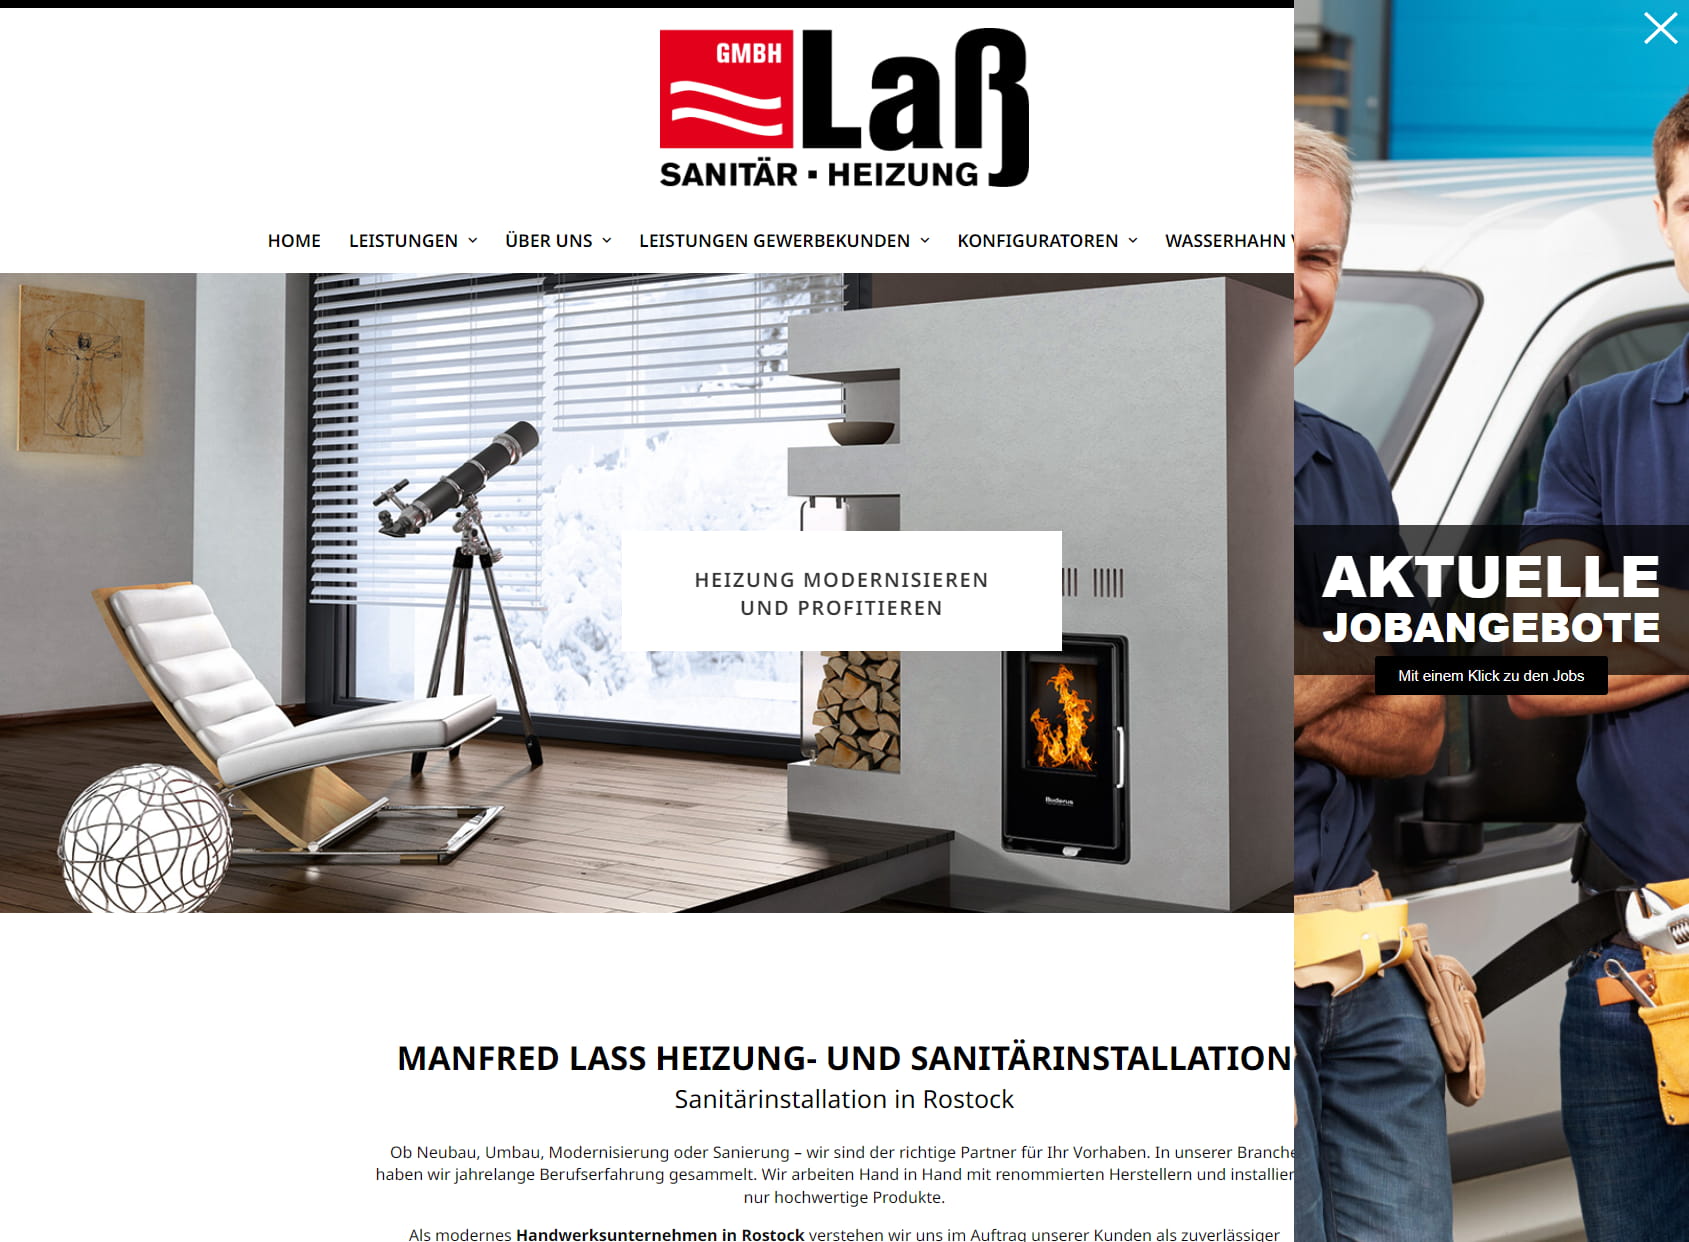 Manfred Laß Heizungs- und Sanitärinstallation GmbH